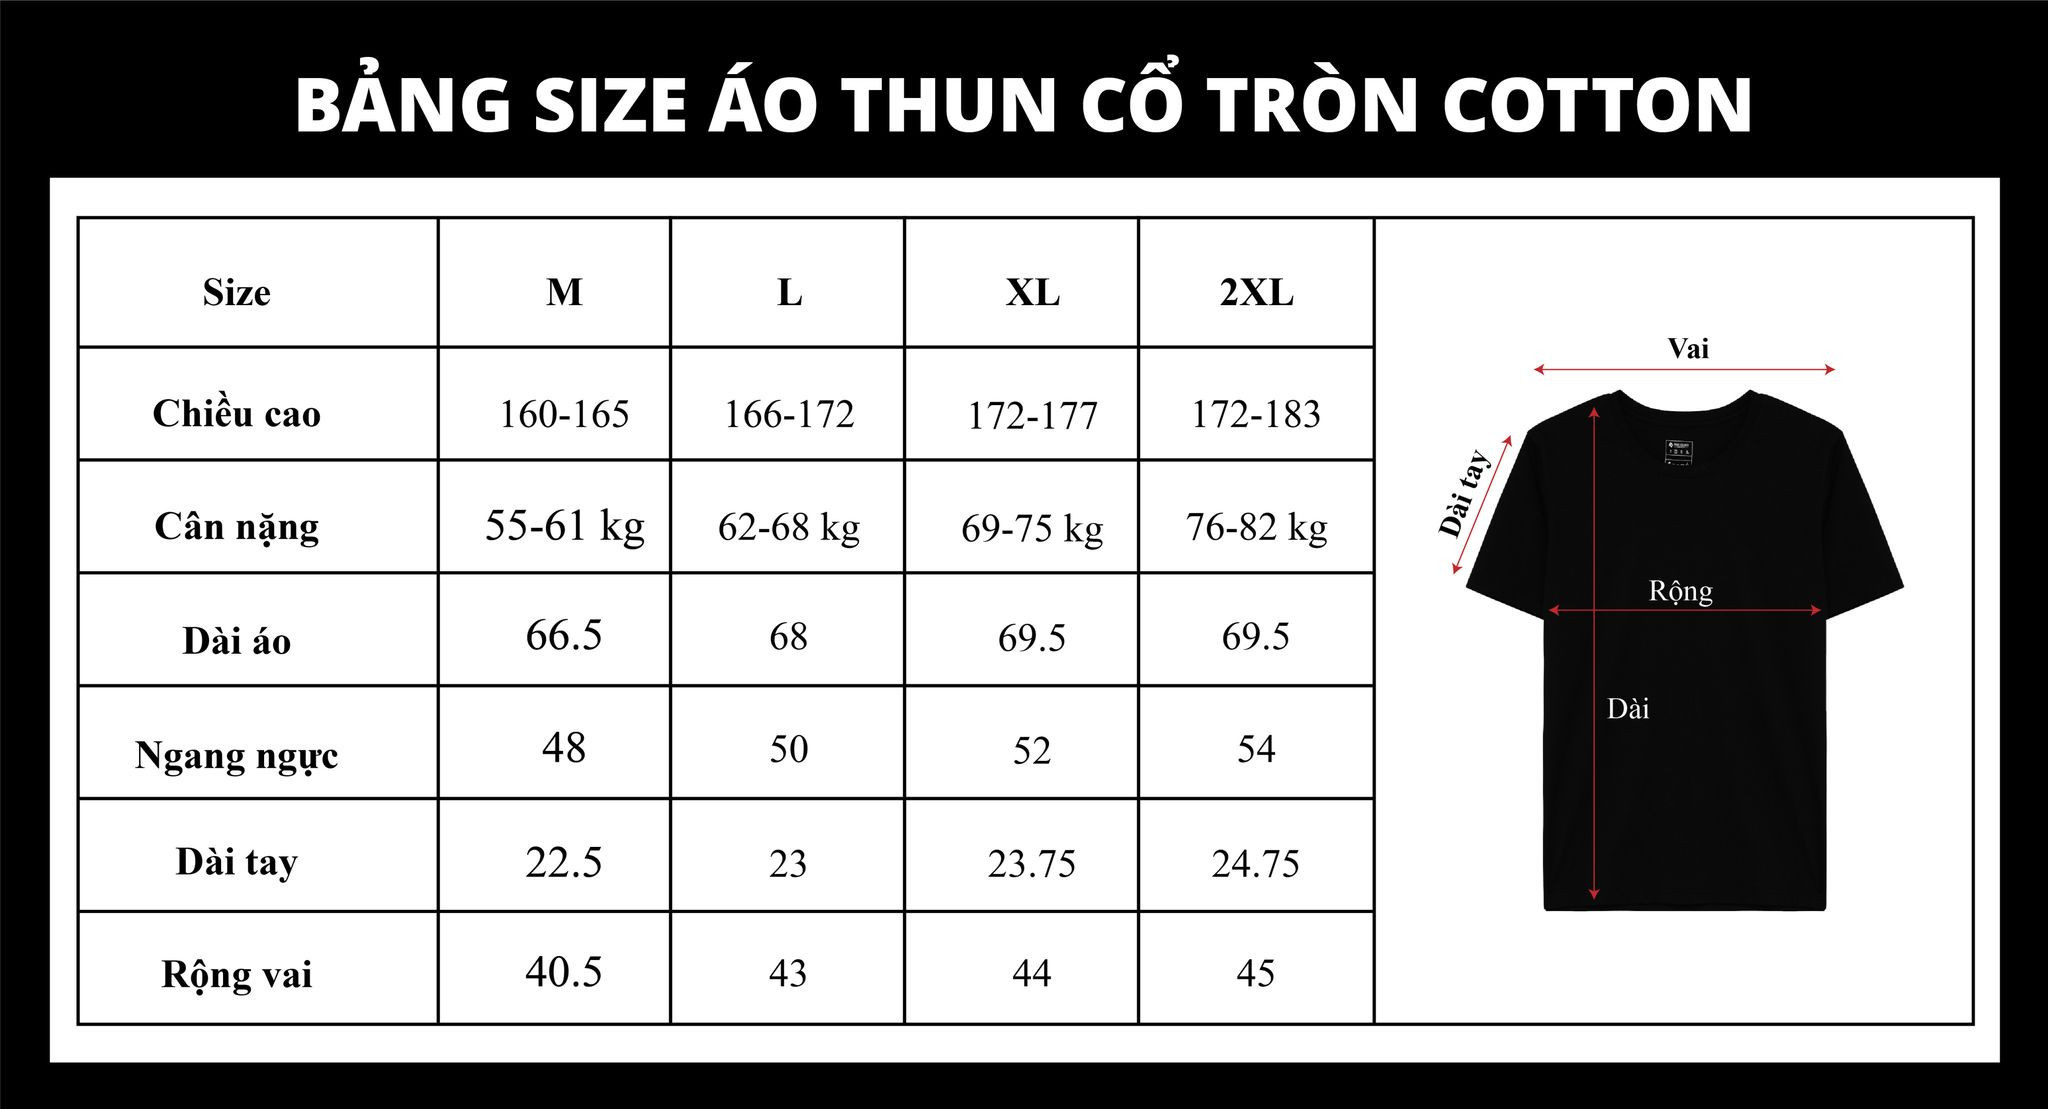 Để lựa chọn size áo thun phù hợp, bạn cần xem xét các yếu tố như cân nặng, chiều cao, số đo các vòng cơ thể và chiều dài tay áo